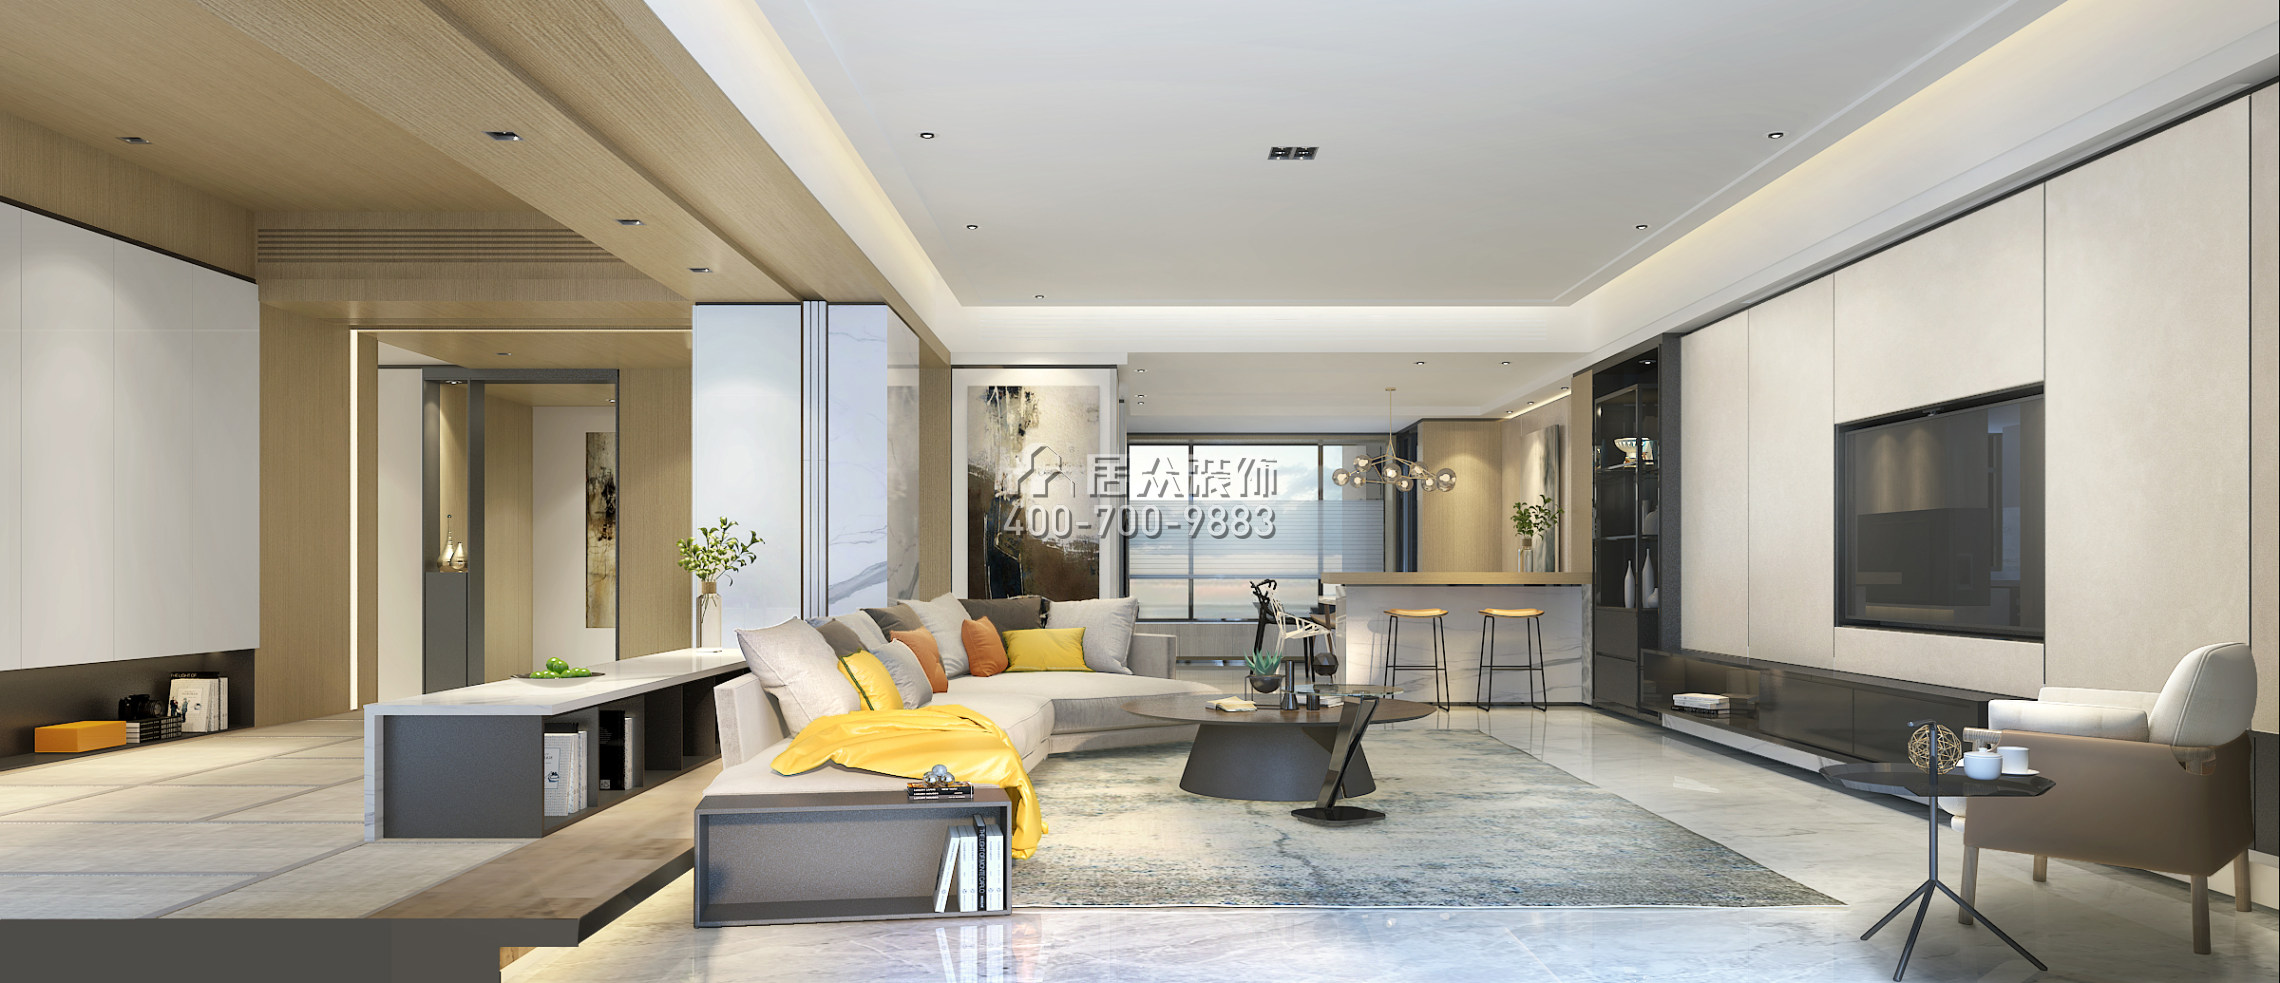 美的君蘭江山300平方米現代簡約風格平層戶型客廳裝修效果圖